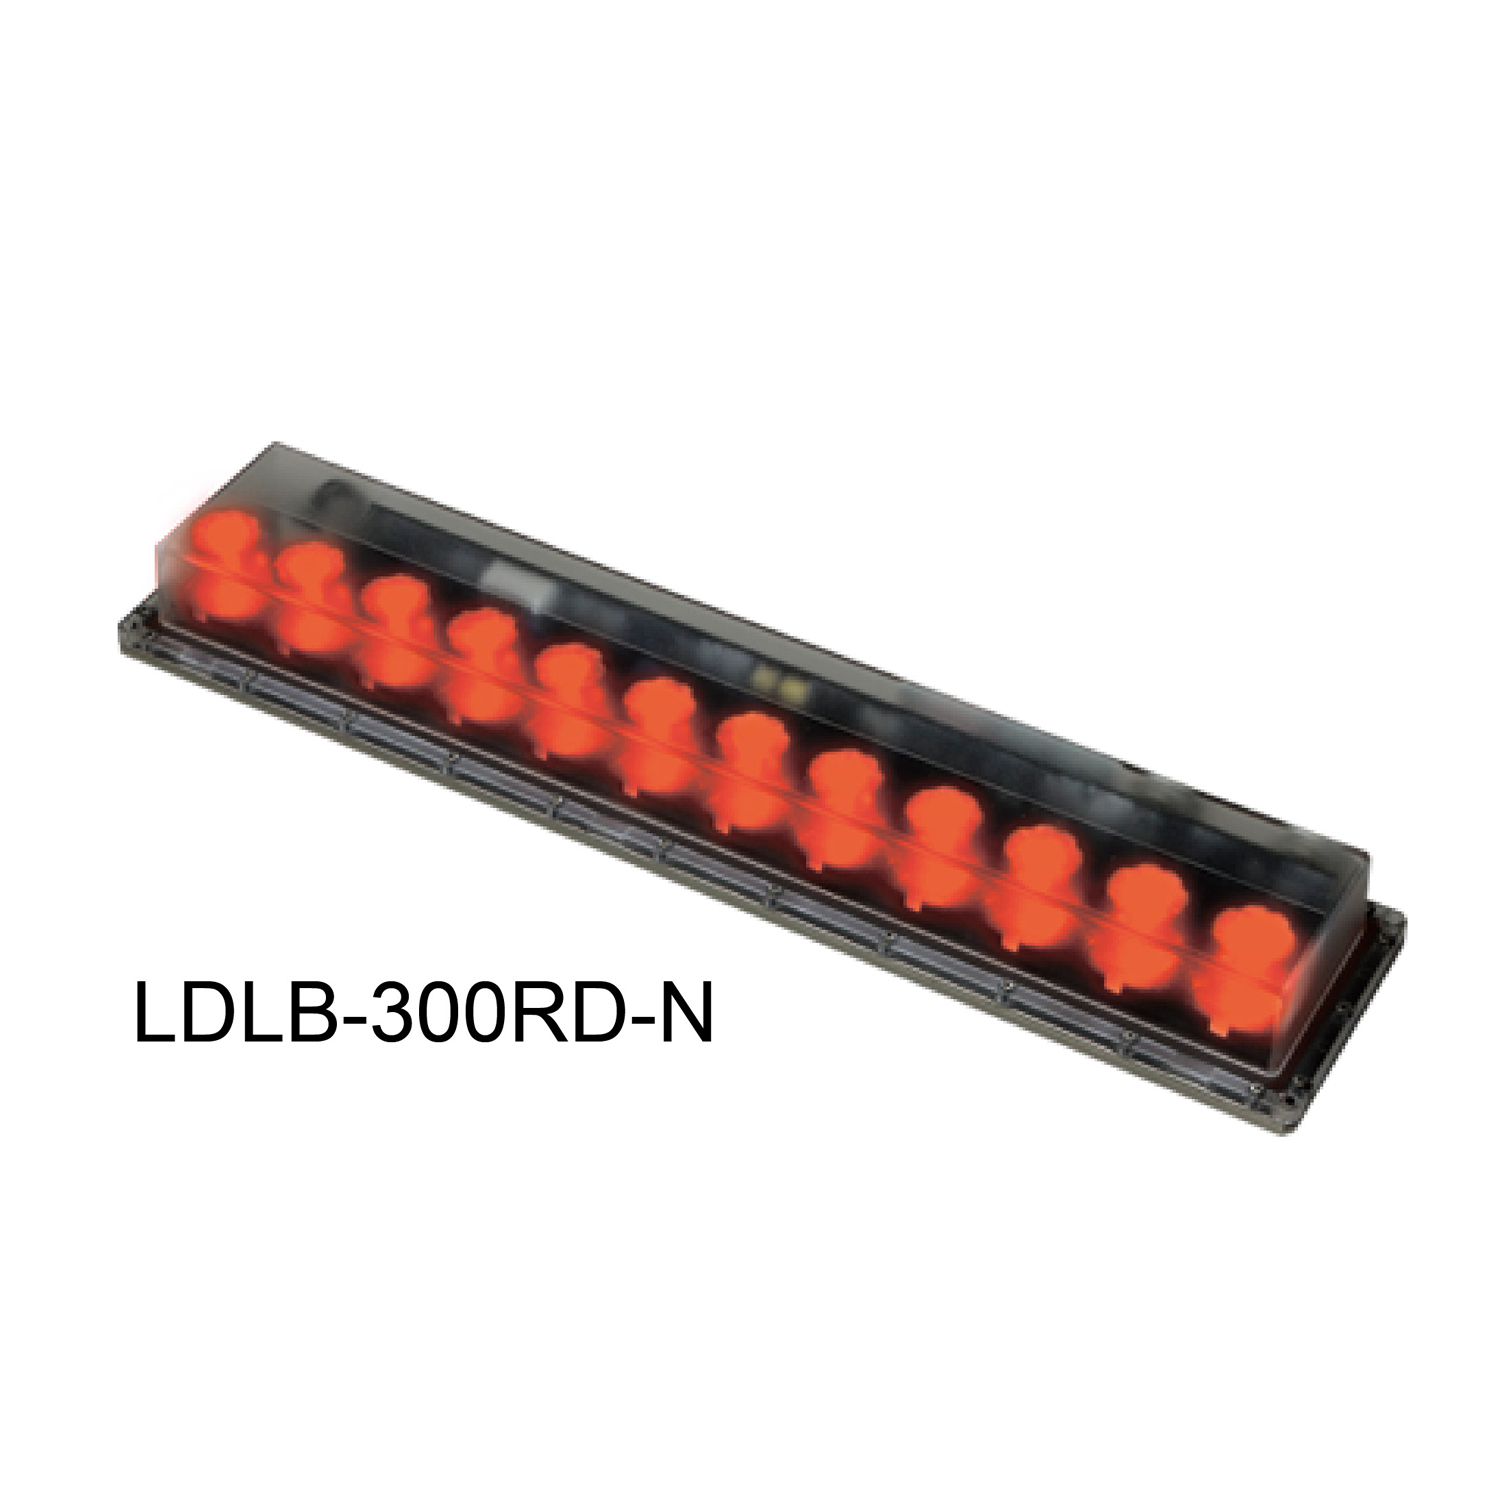 LDLB-300RD-N